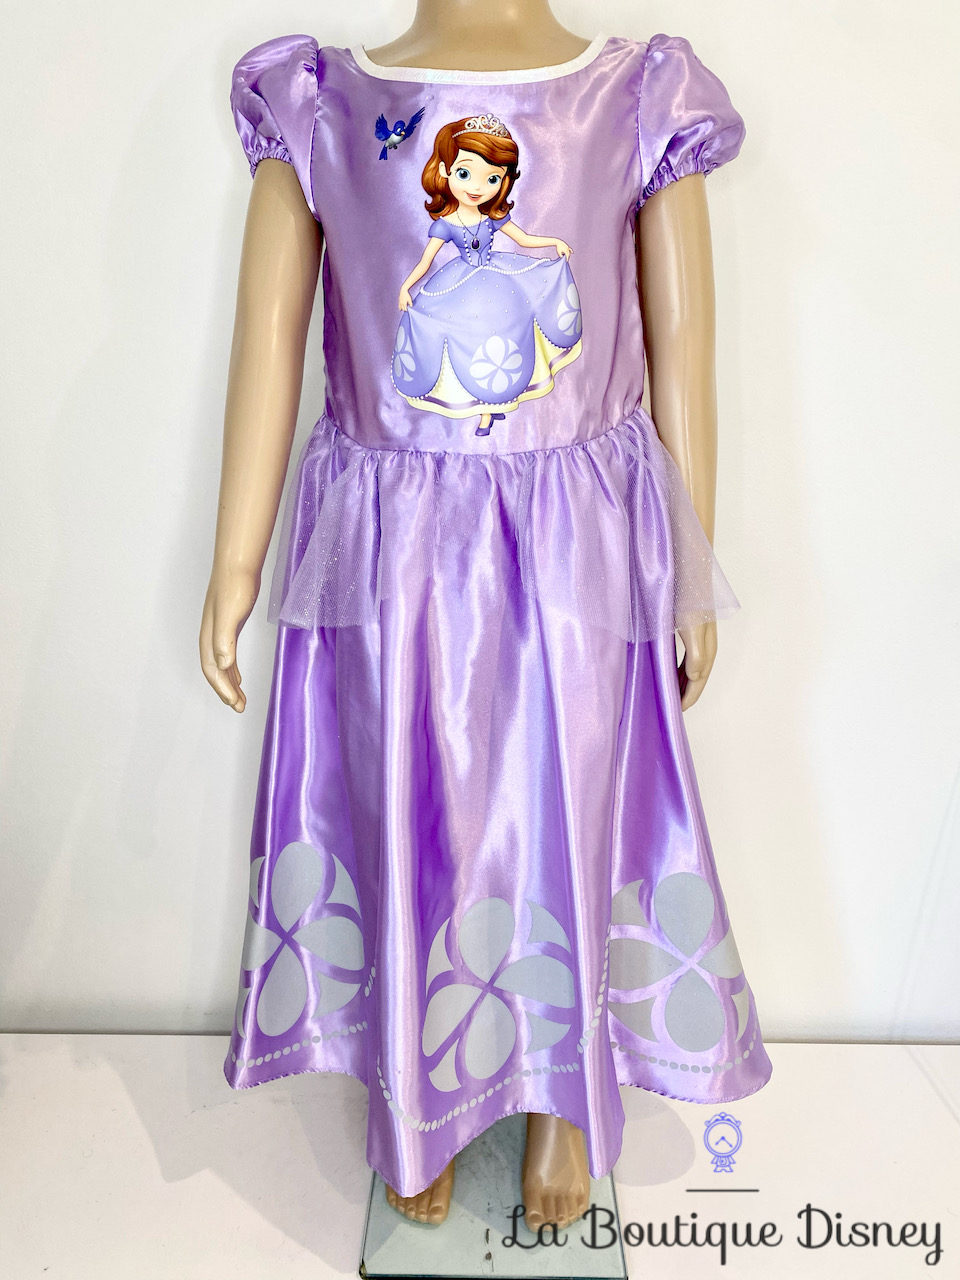 Boneca Princesa Sofia Disney - Grande - Sofia (vestido Azul) Cmt56 - MP  Brinquedos